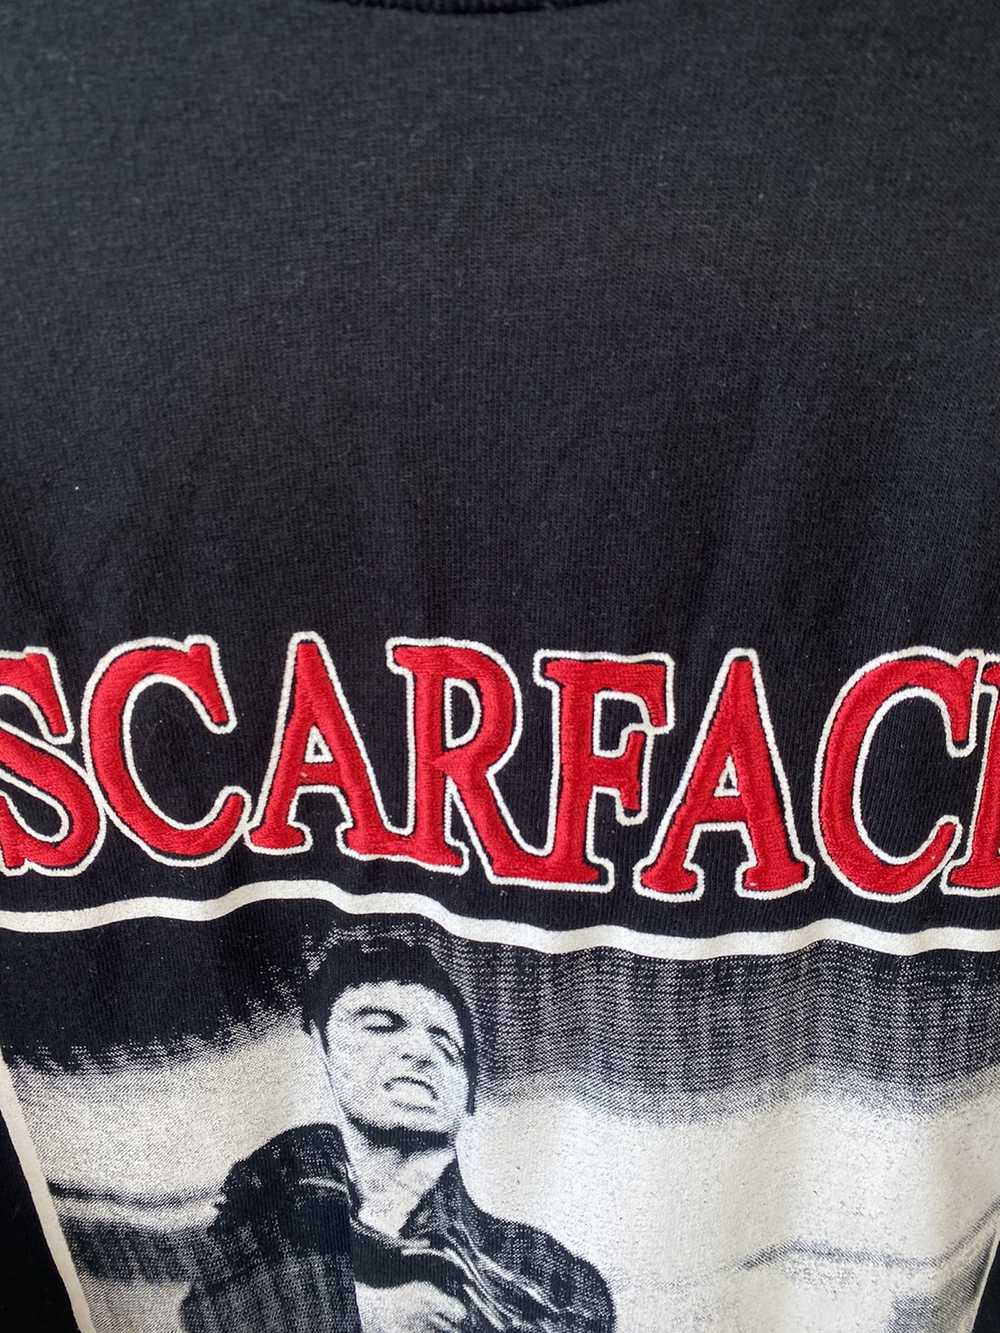 Movie Scareface shirt - image 2